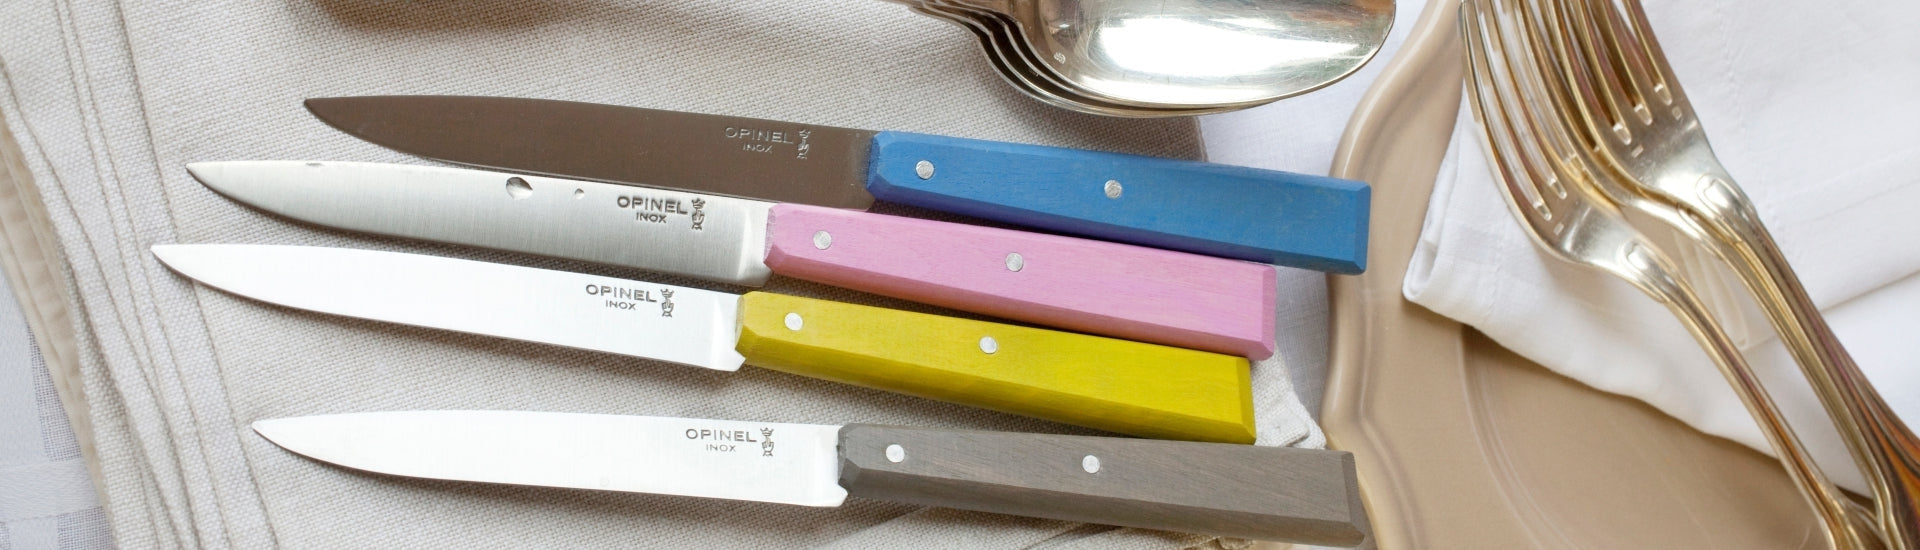 Bon Appetit Table Knives